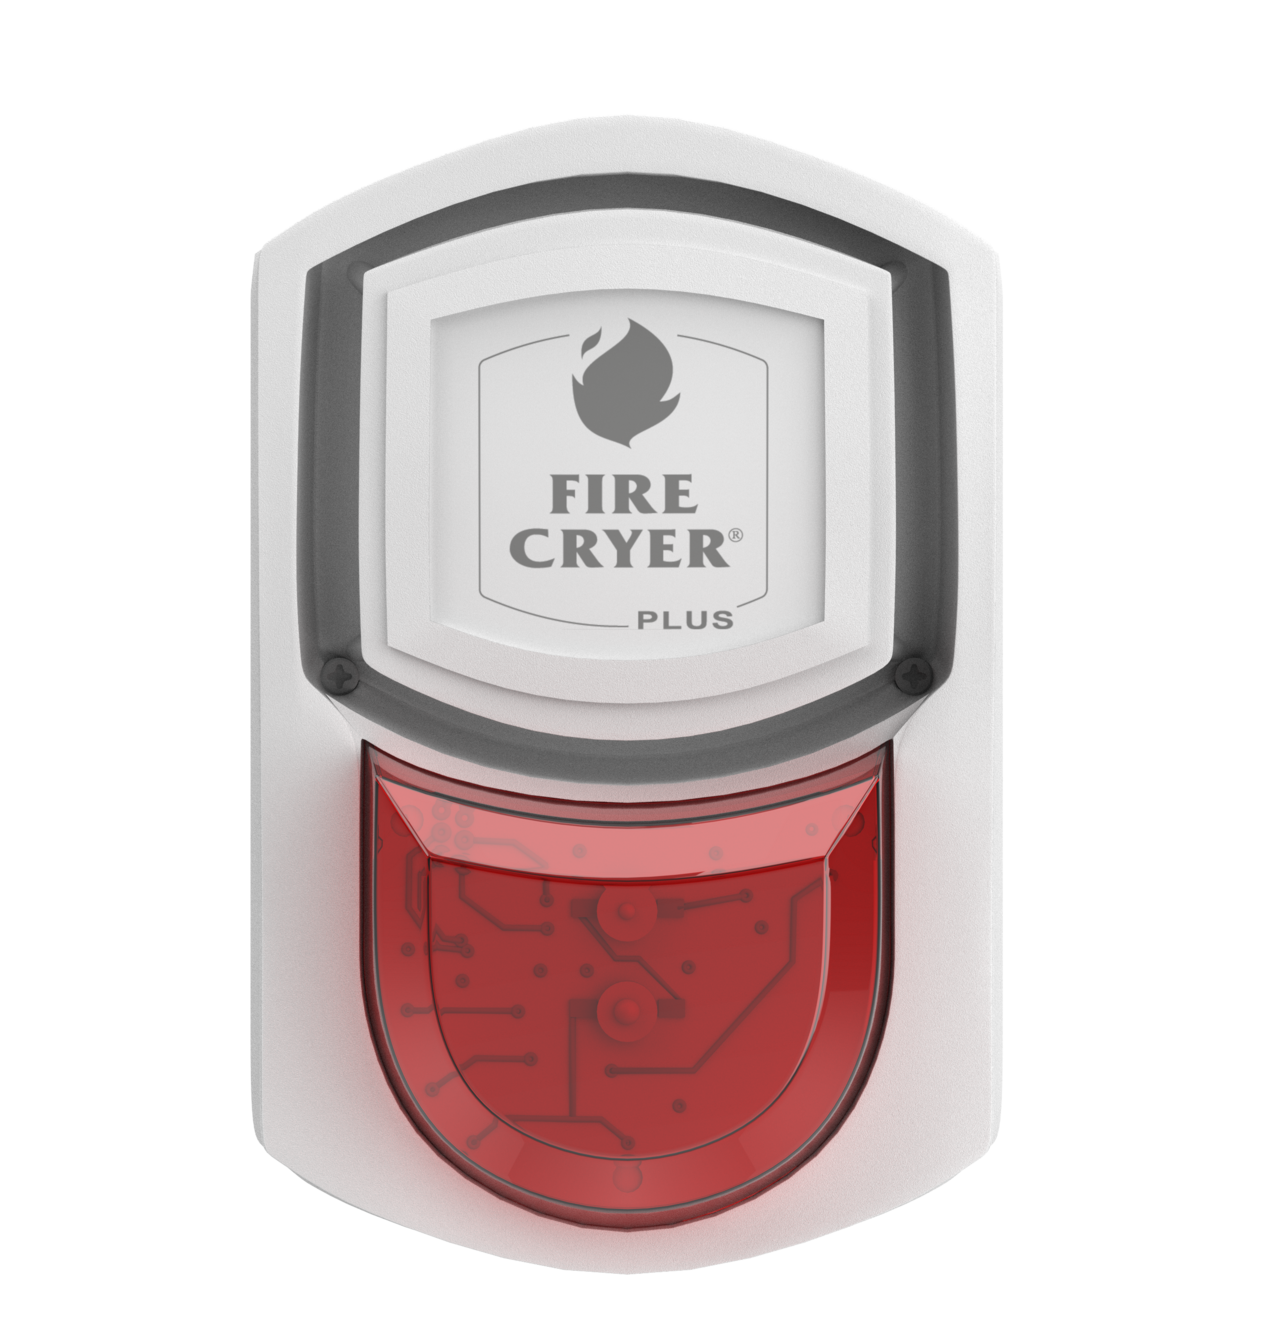 FireCryer Plus Vit, röd blixt